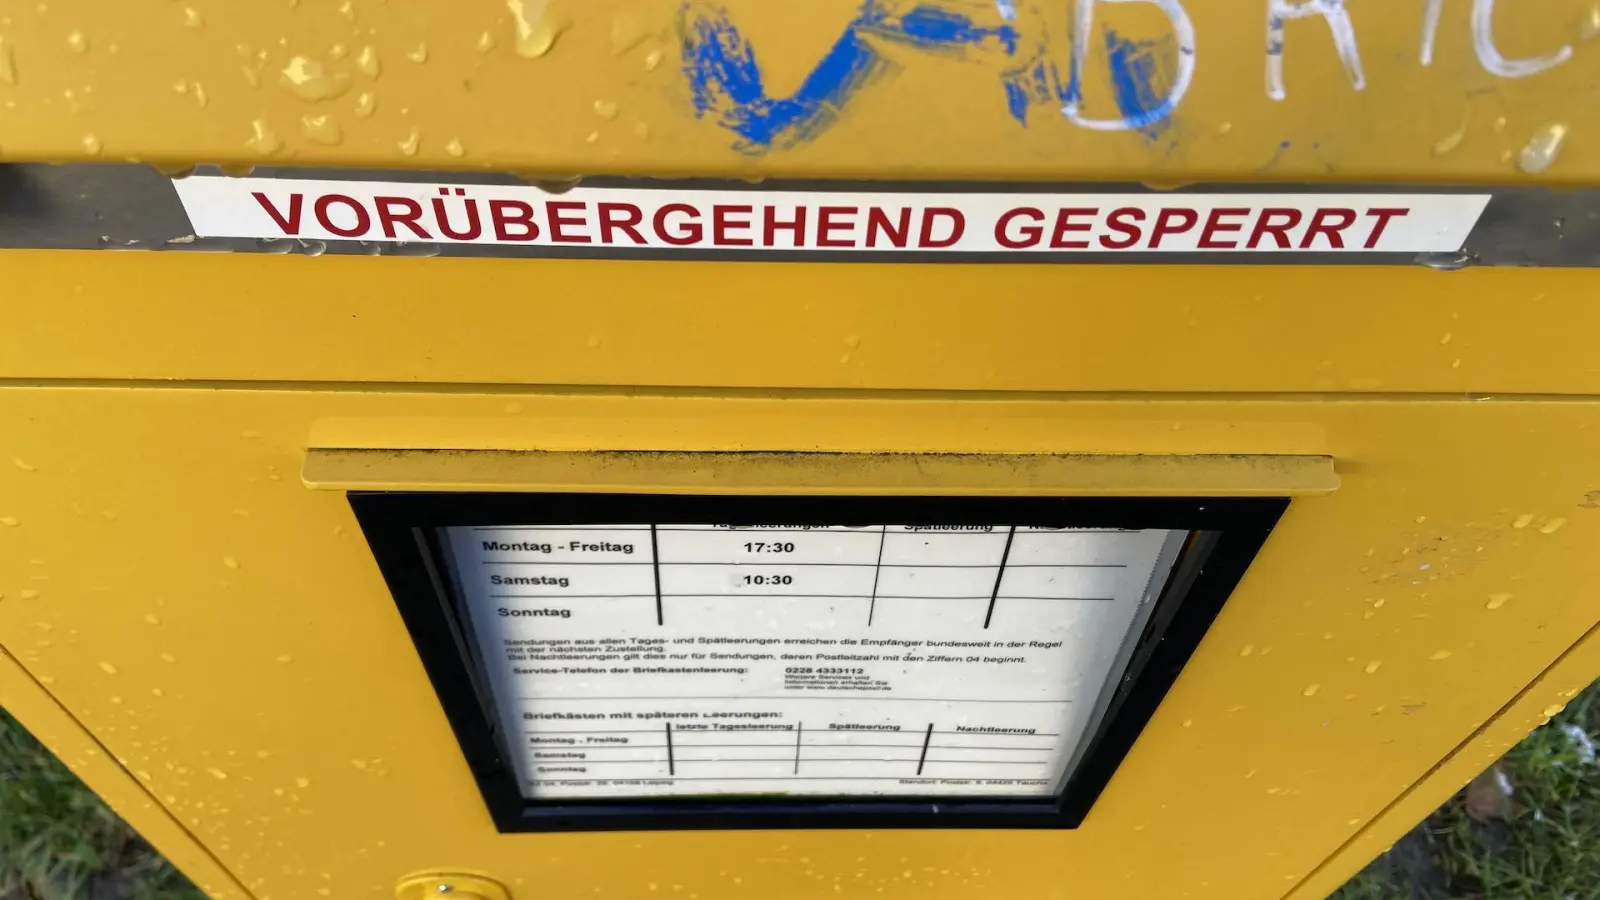 Der gesperrte Briefkasten in der Poststraße in Taucha. (Foto: taucha-kompakt.de)